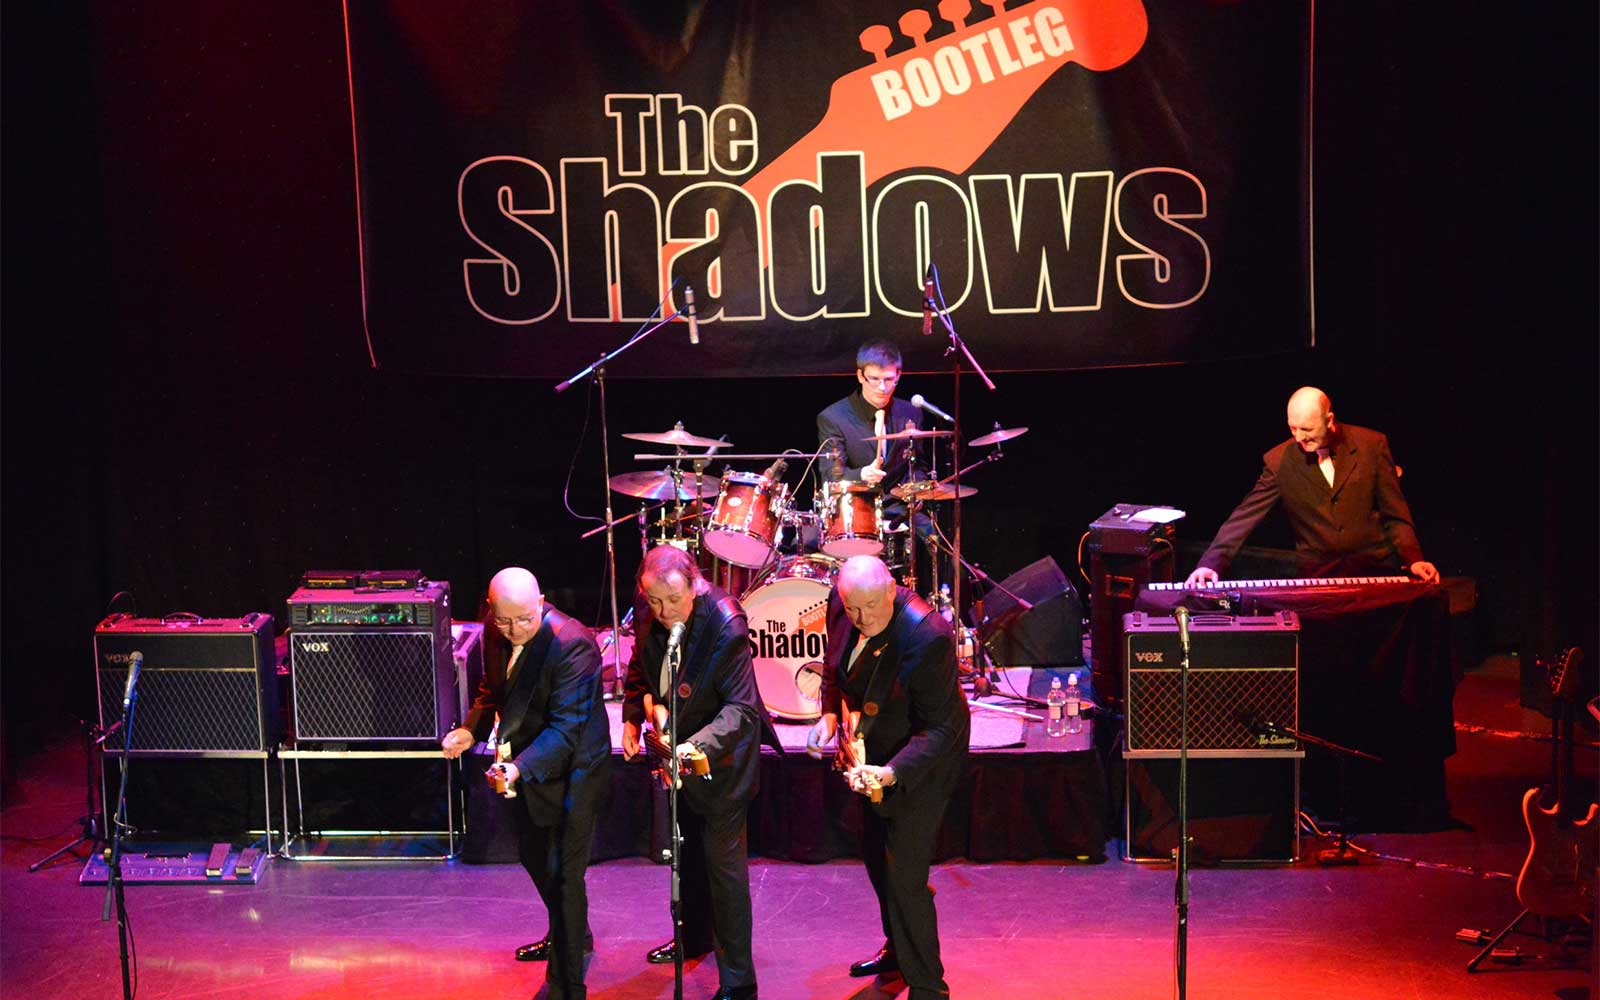 The Bootleg Shadows